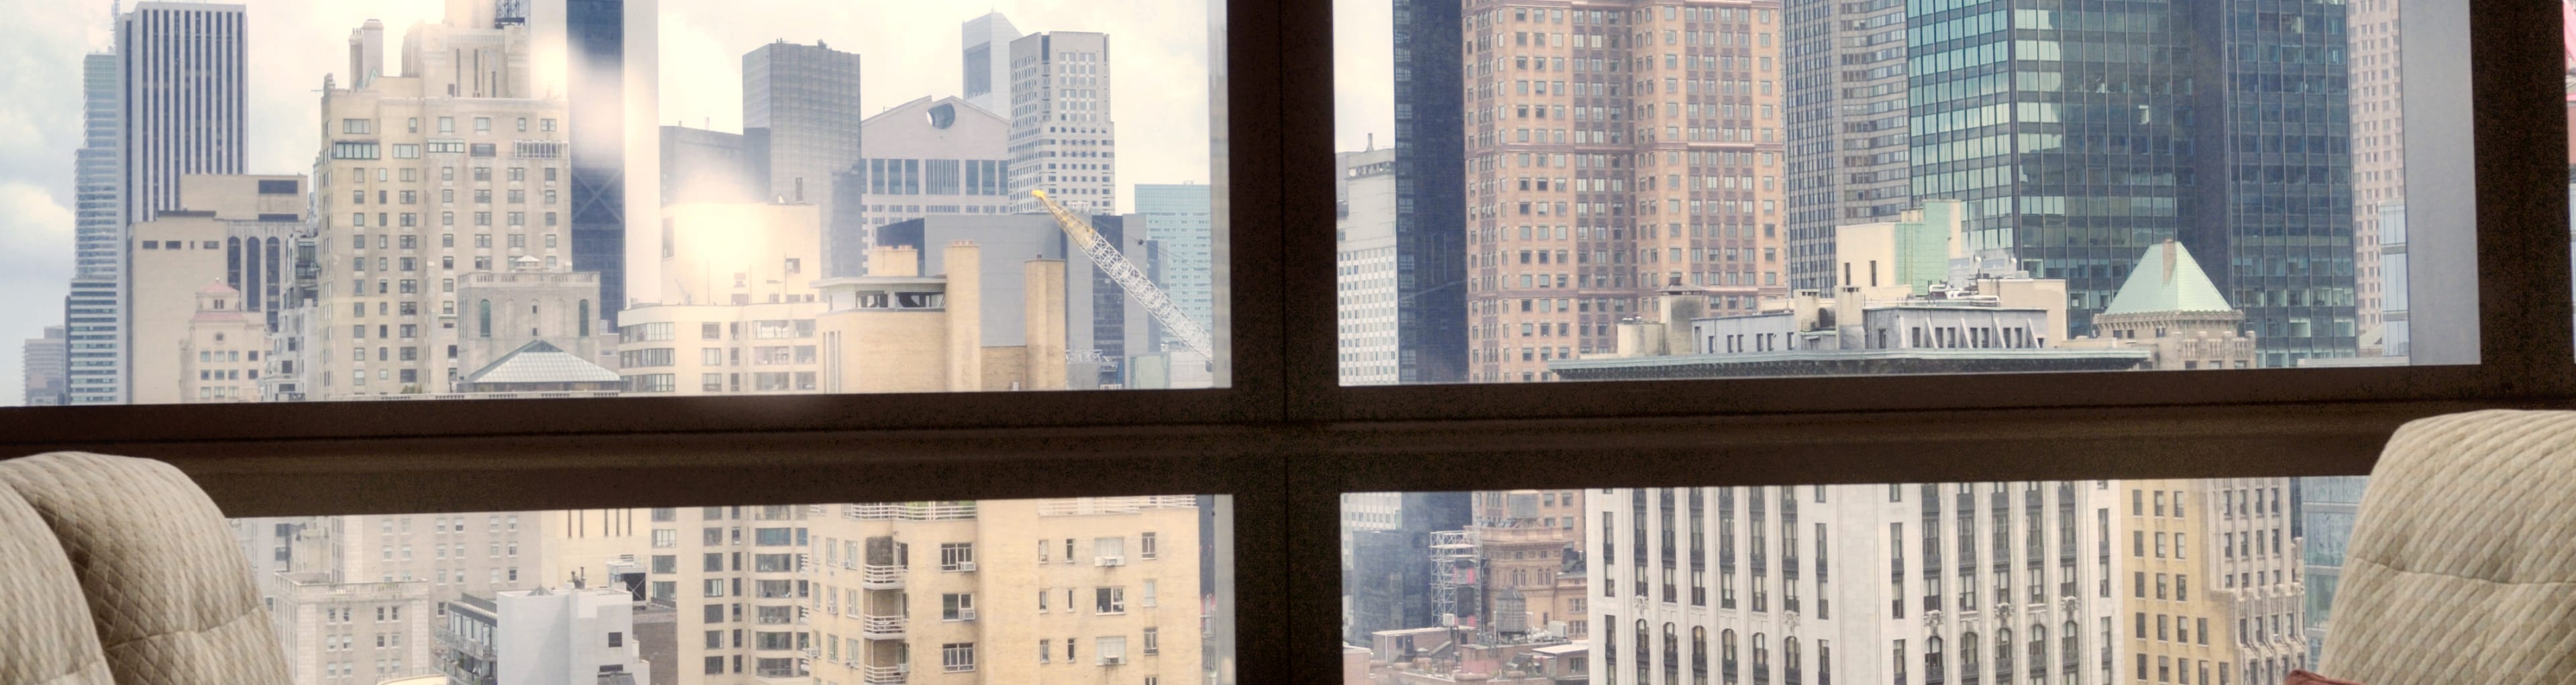 La vue depuis un hôtel à New York